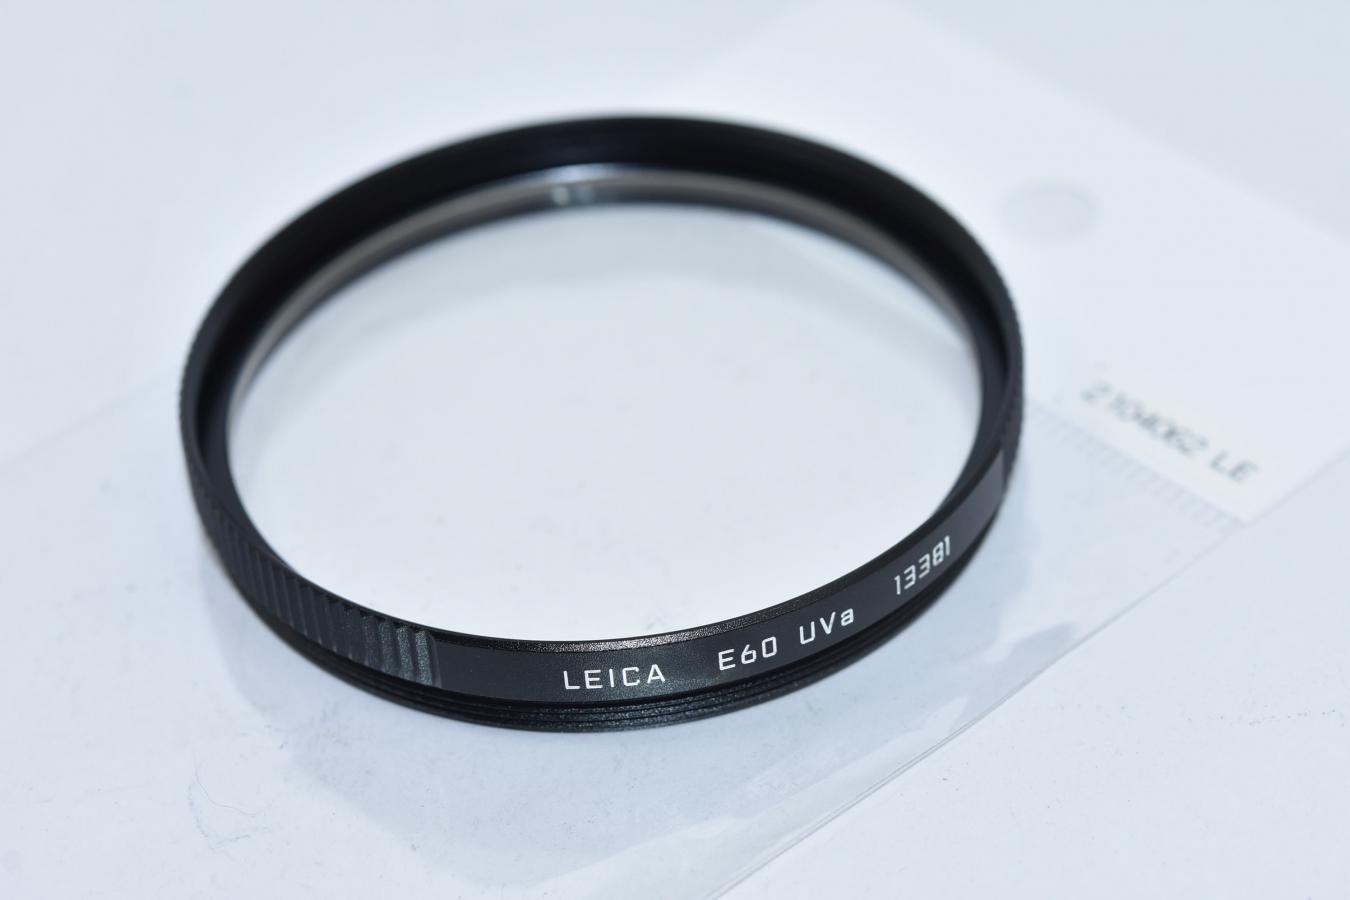 LEICA E60 UVa 13381